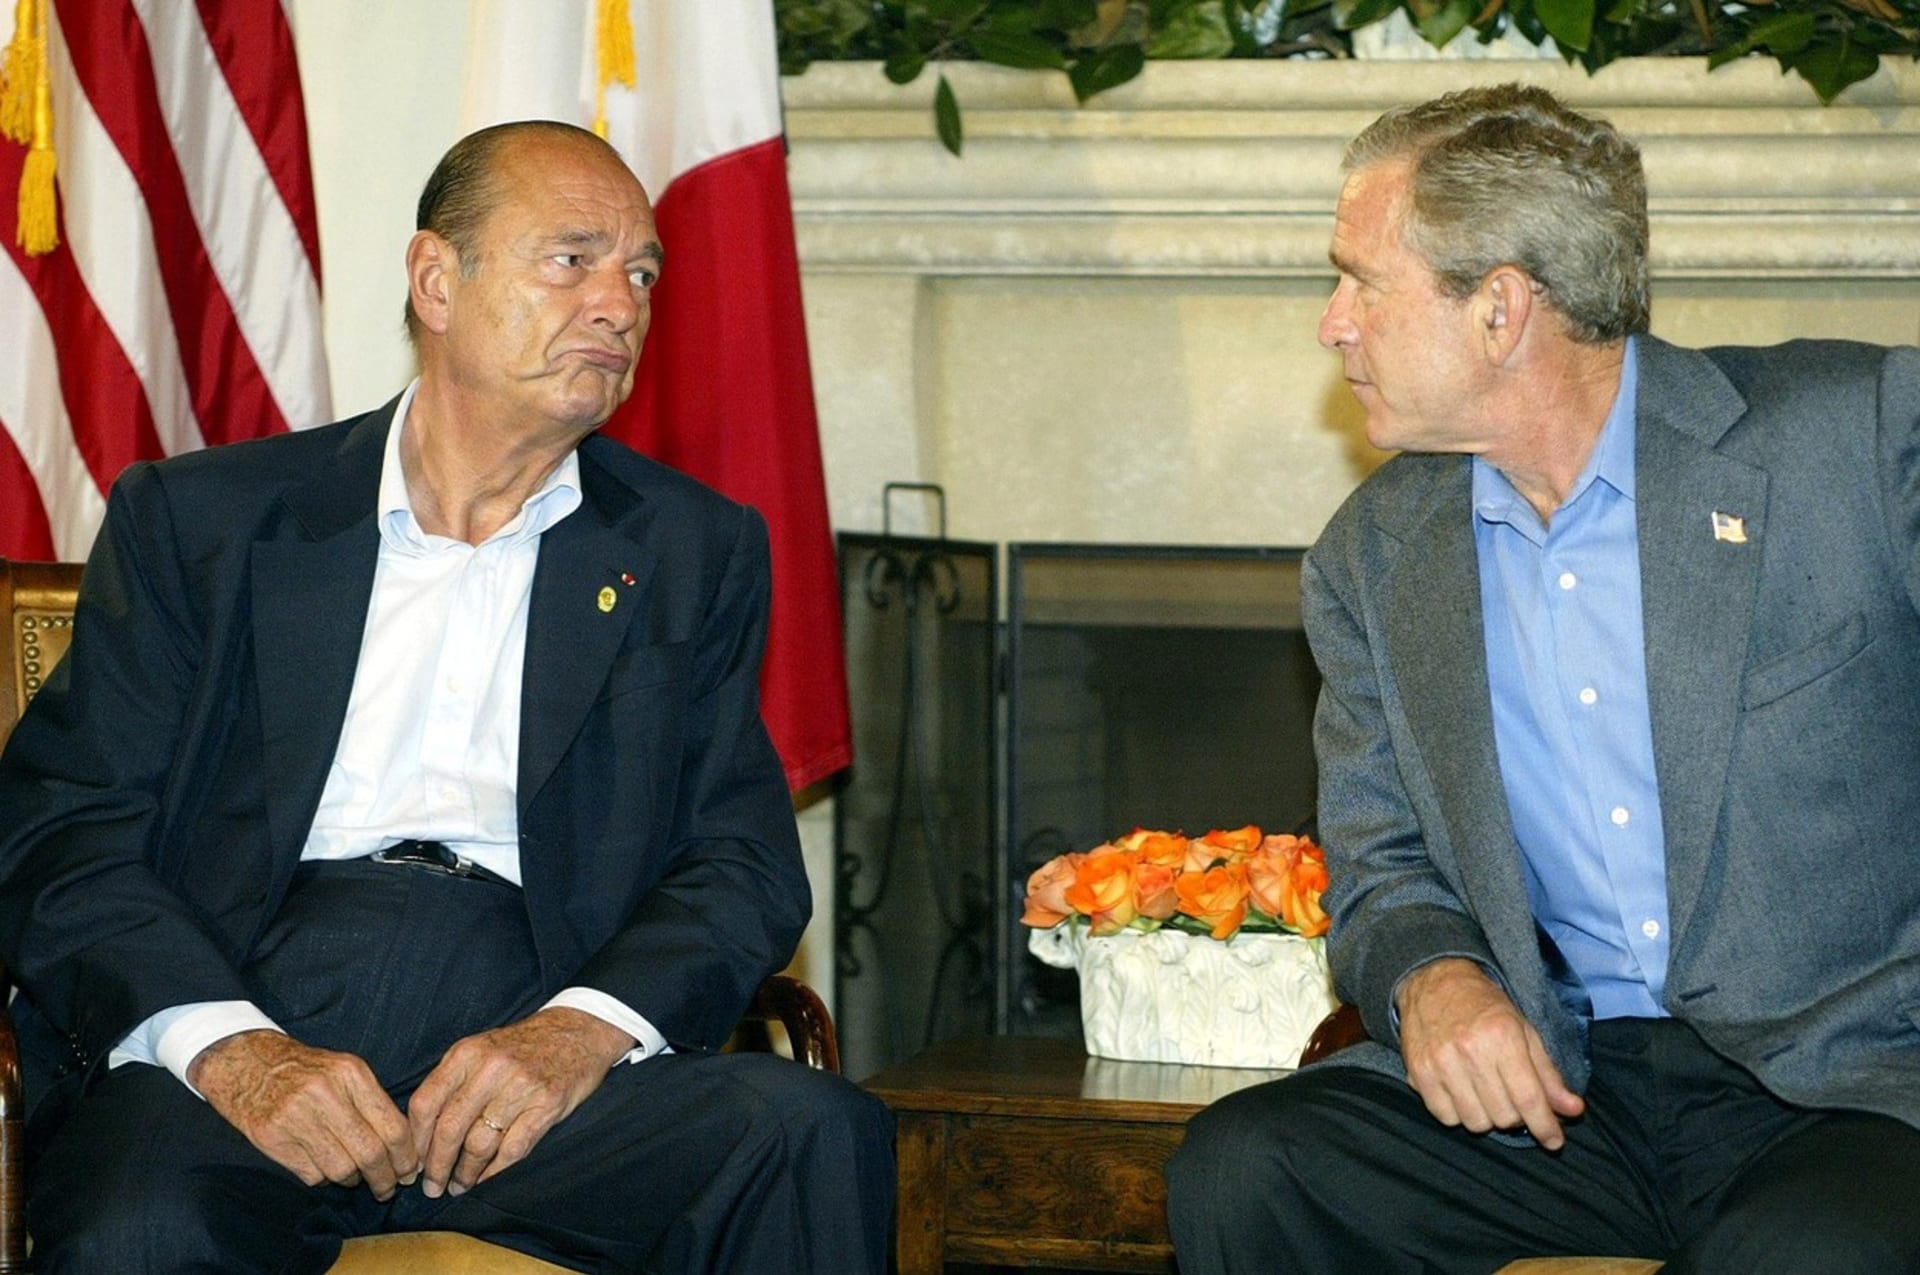 Okupace Iráku se změní v noční můru, varoval Chirac prezidenta Bushe